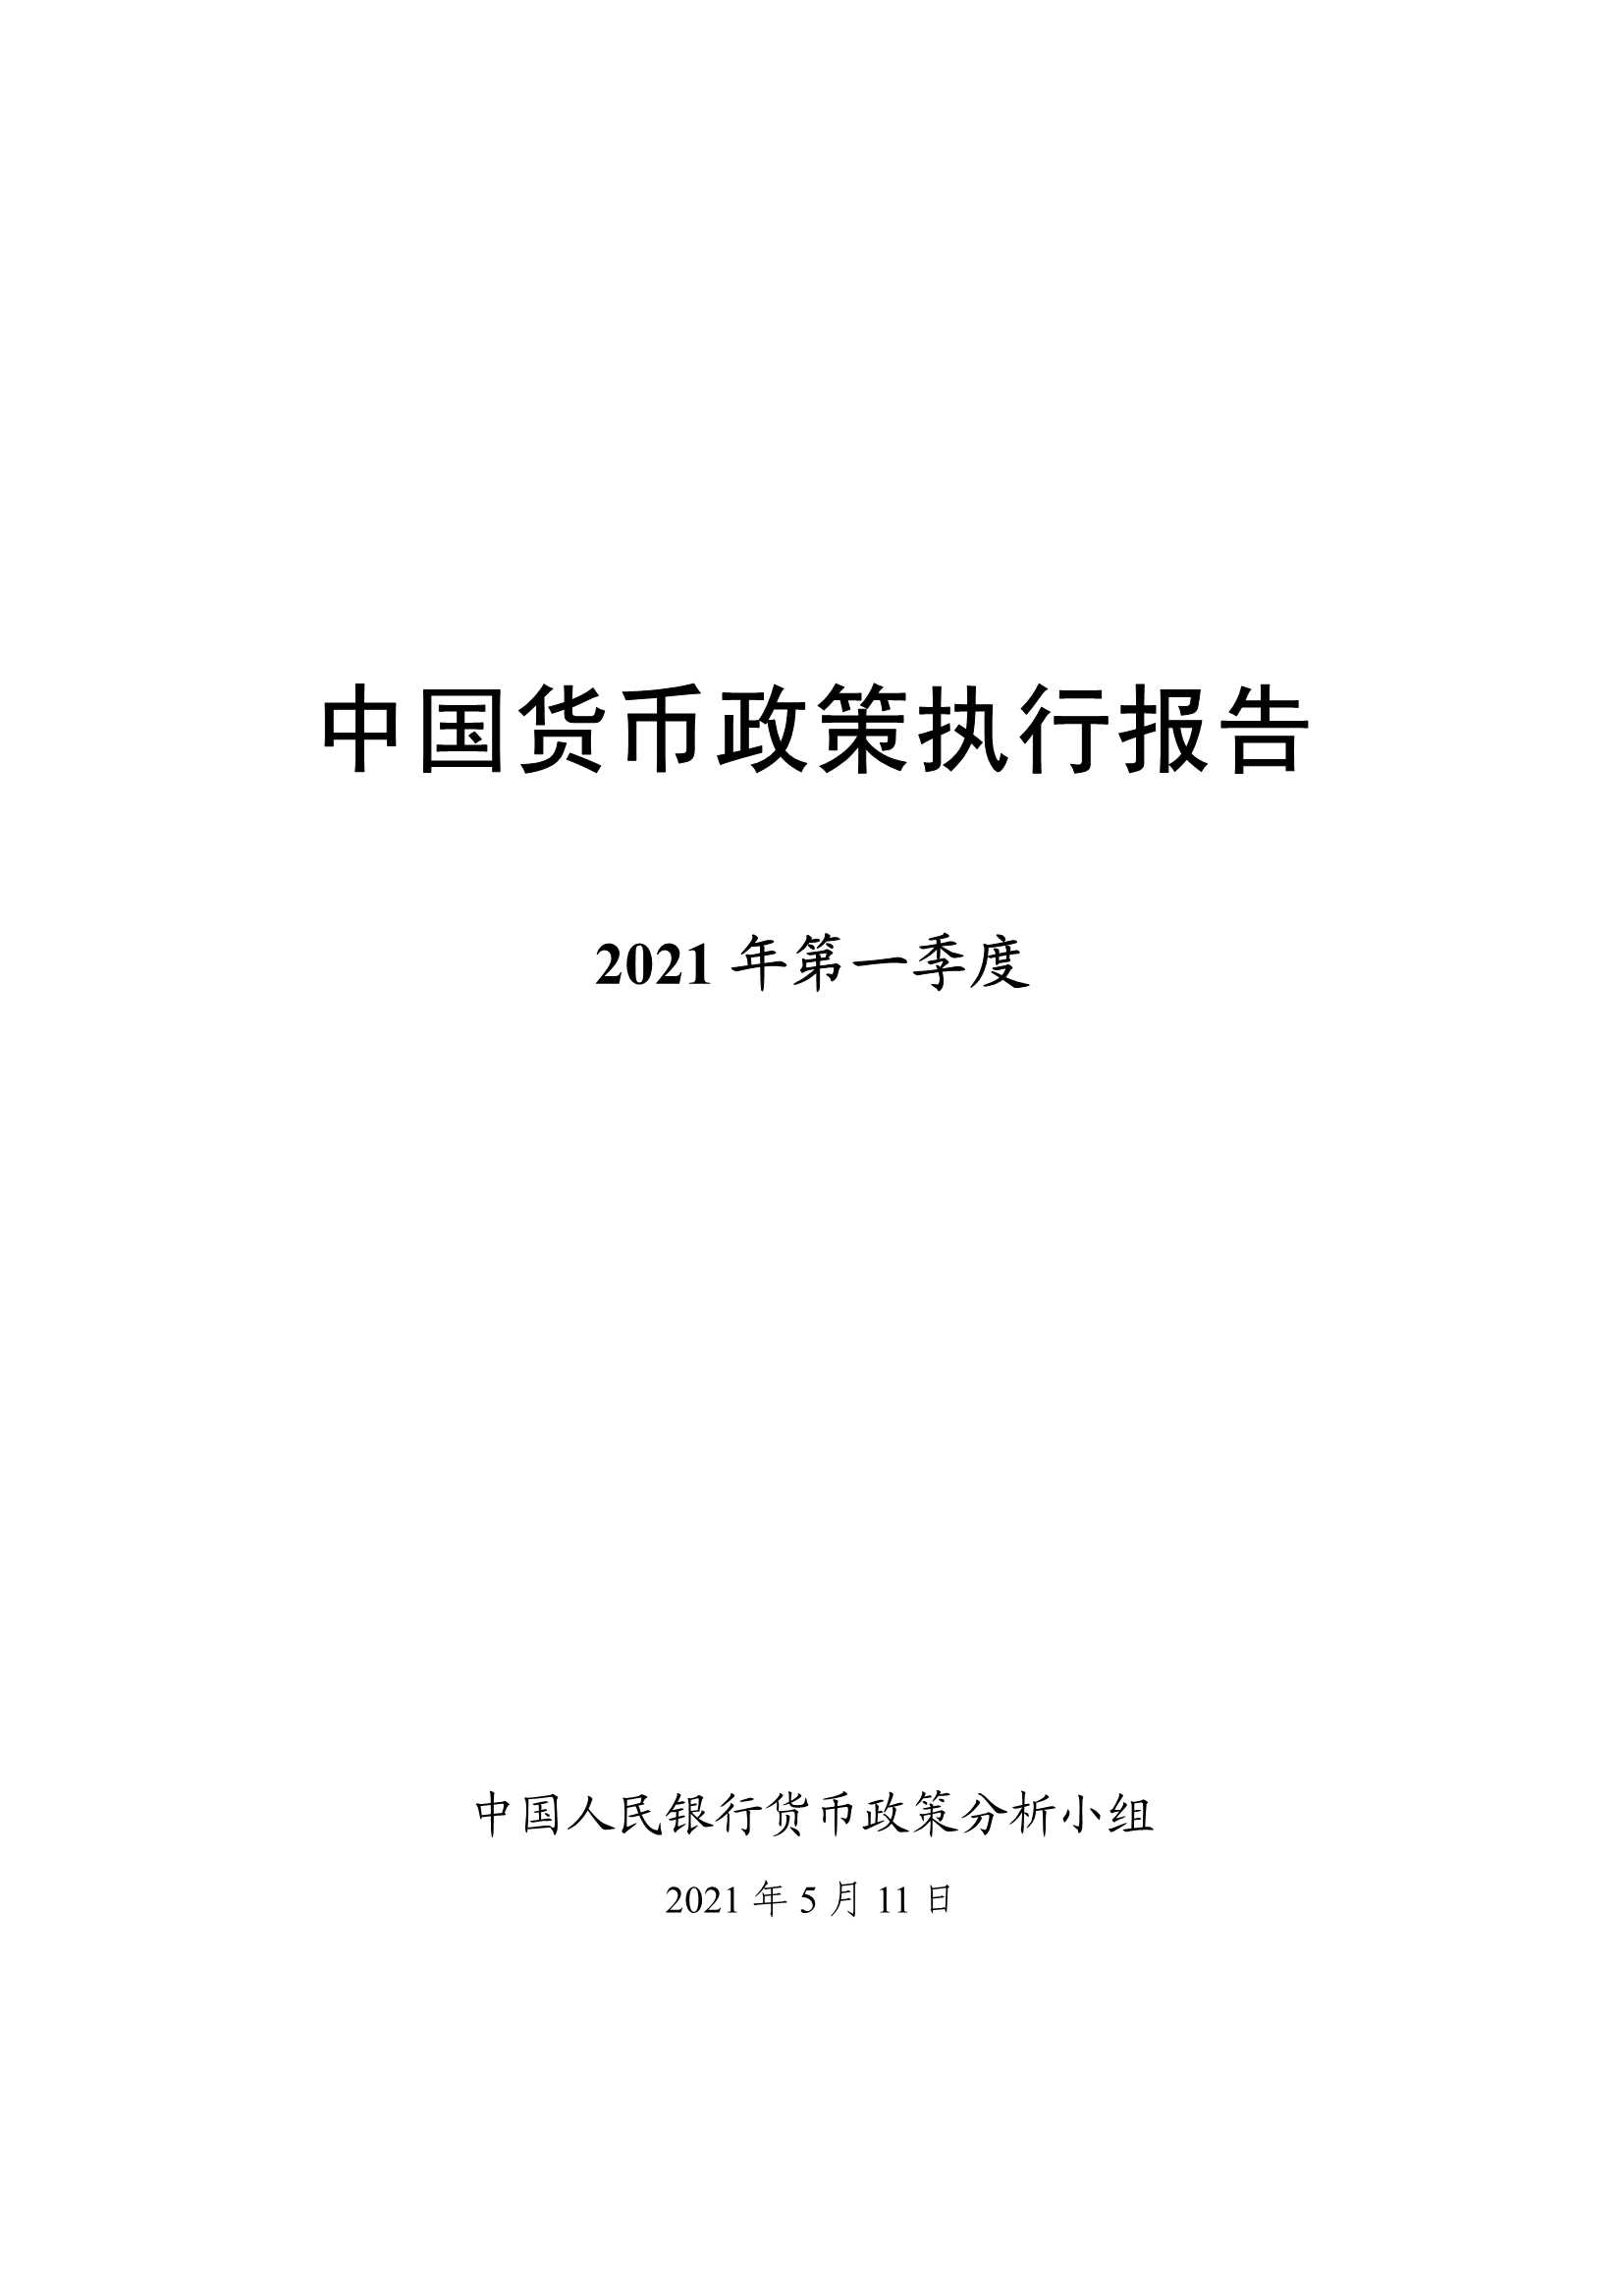 中国人民银行-中国货币政策执行报告 2021年一季度-2021.05-55页